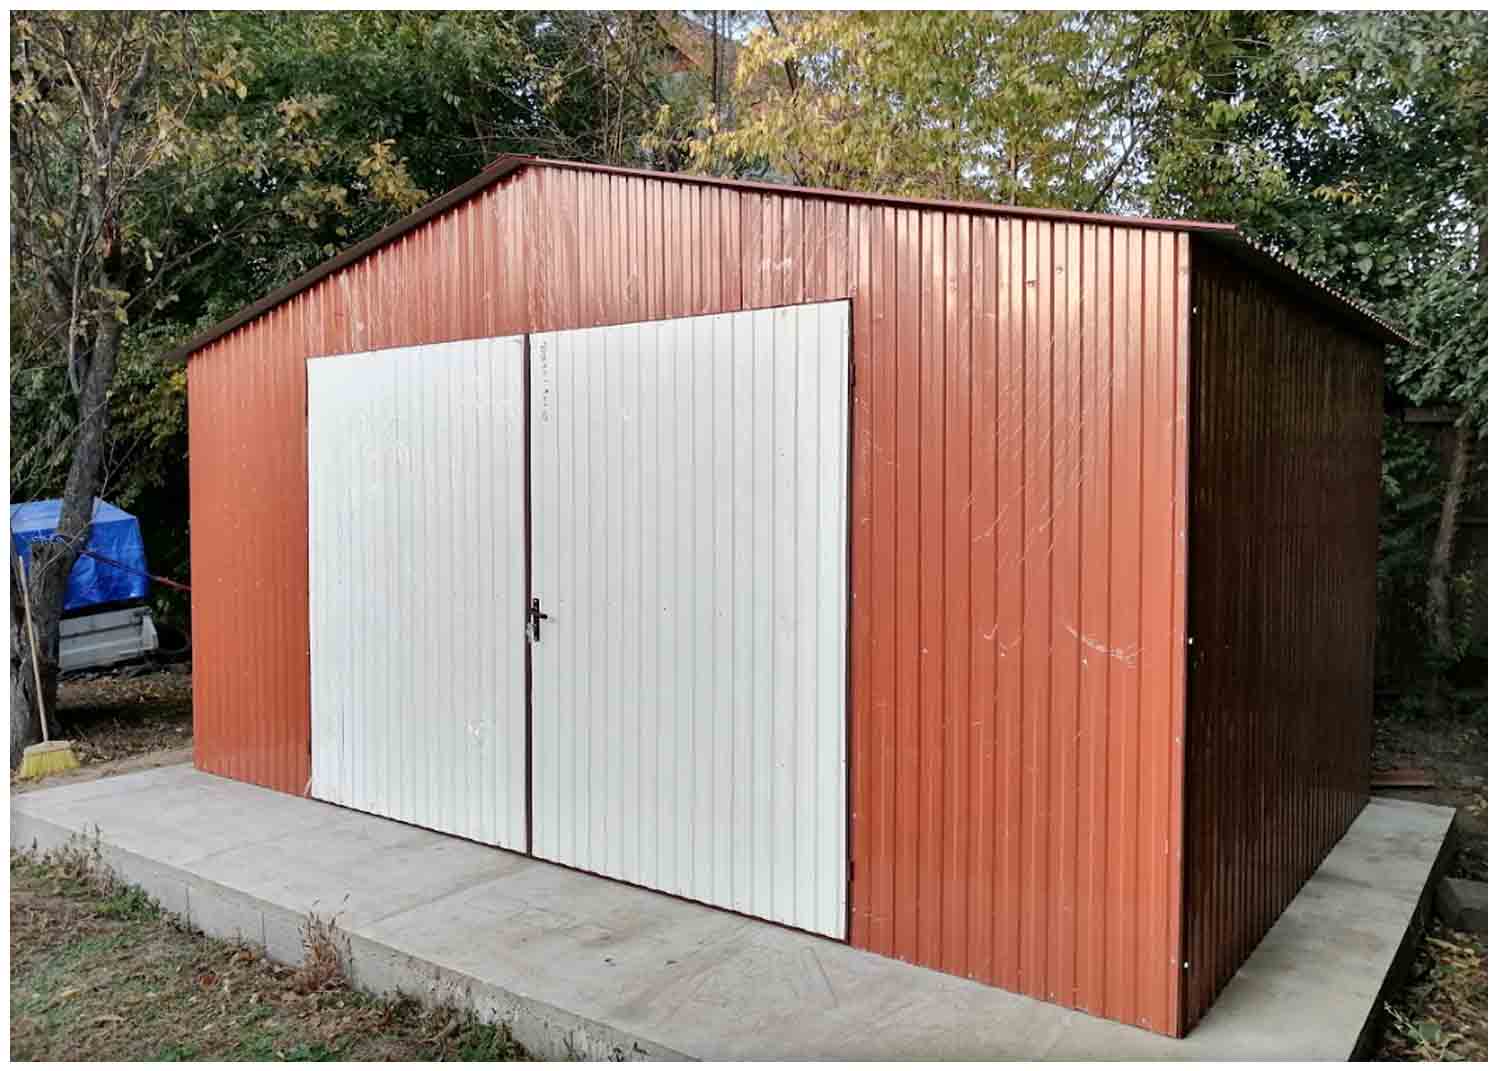 Plechová garáž 5x3m, sedlová střecha, sklad, zahradní domek